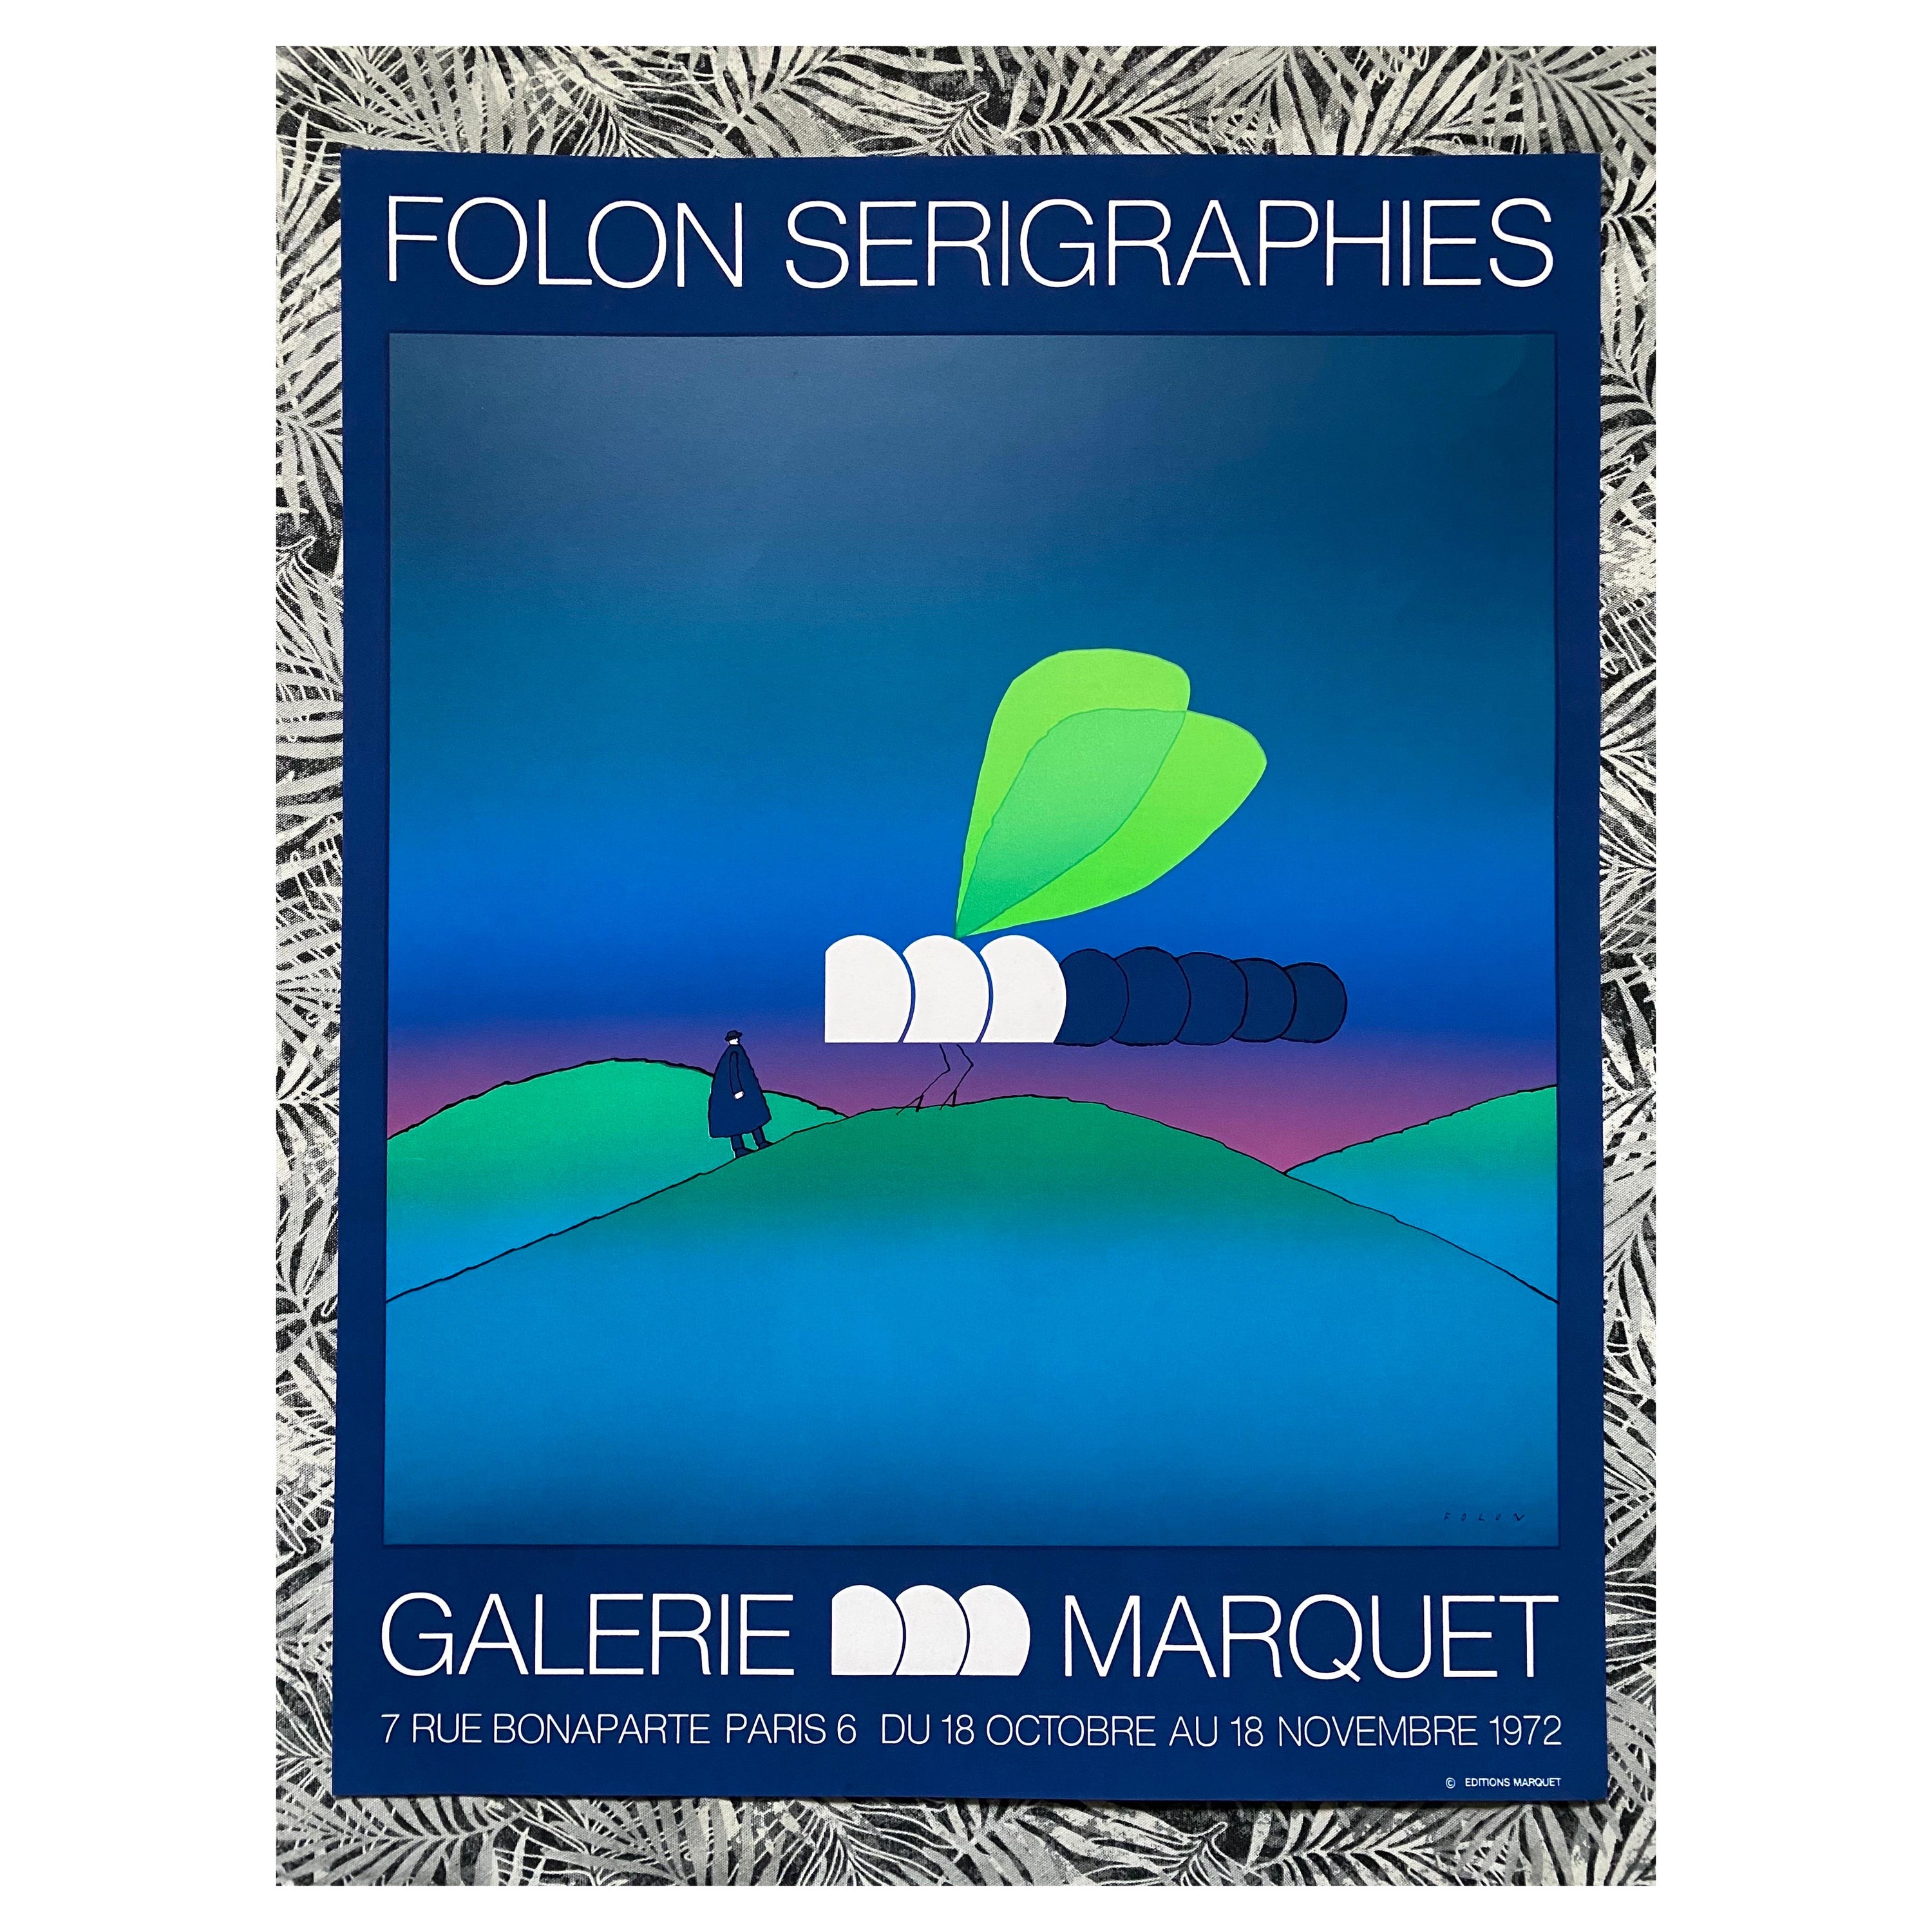 Jean Michel Folon Serigraph "Libellule" Exhibition Print, 1972 For Sale